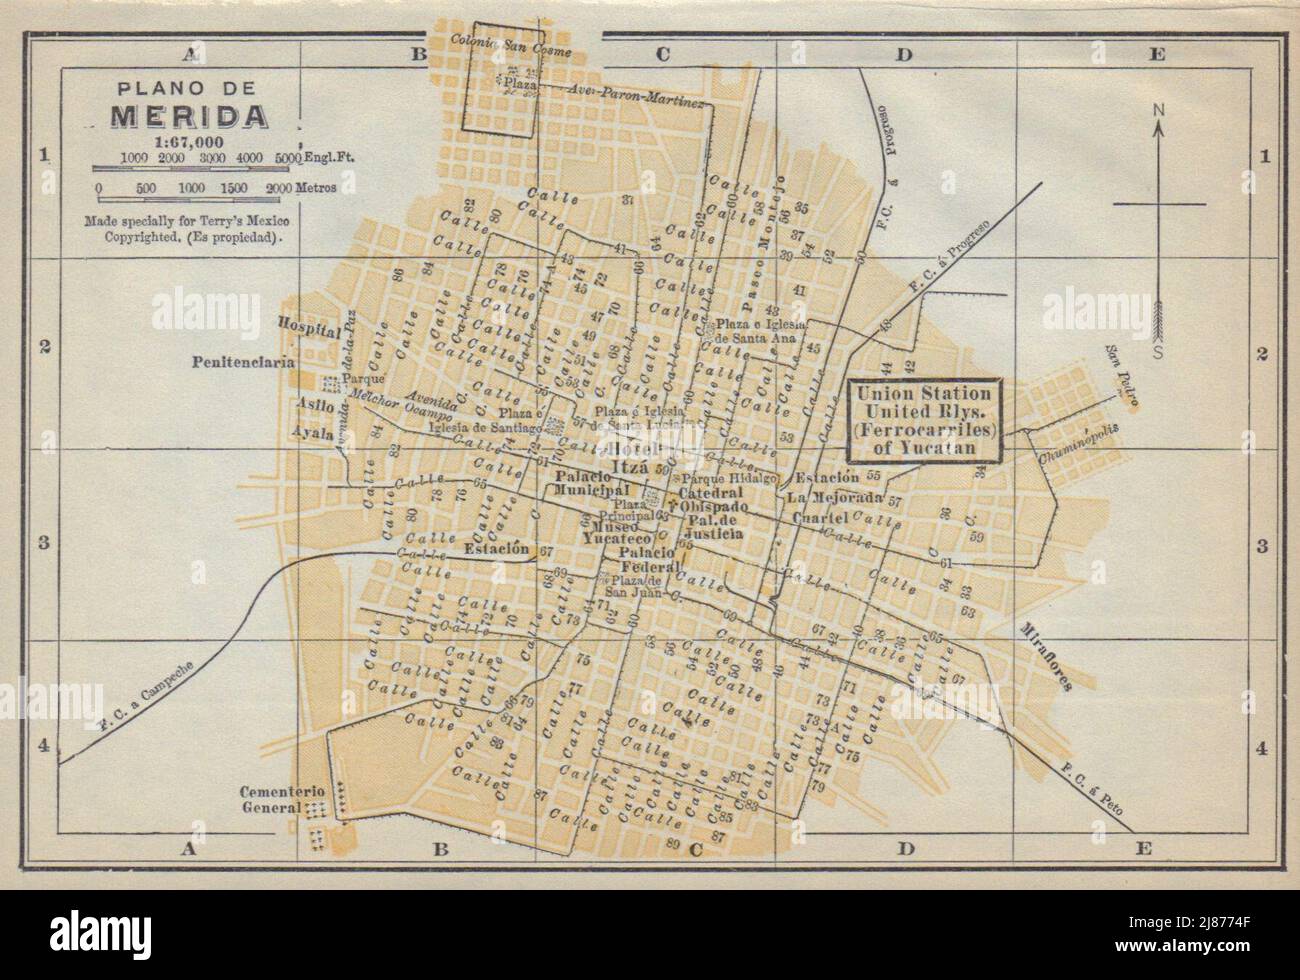 Plano de MERIDA, Mexico. Mapa de la ciudad. City/town plan 1938 old Stock Photo